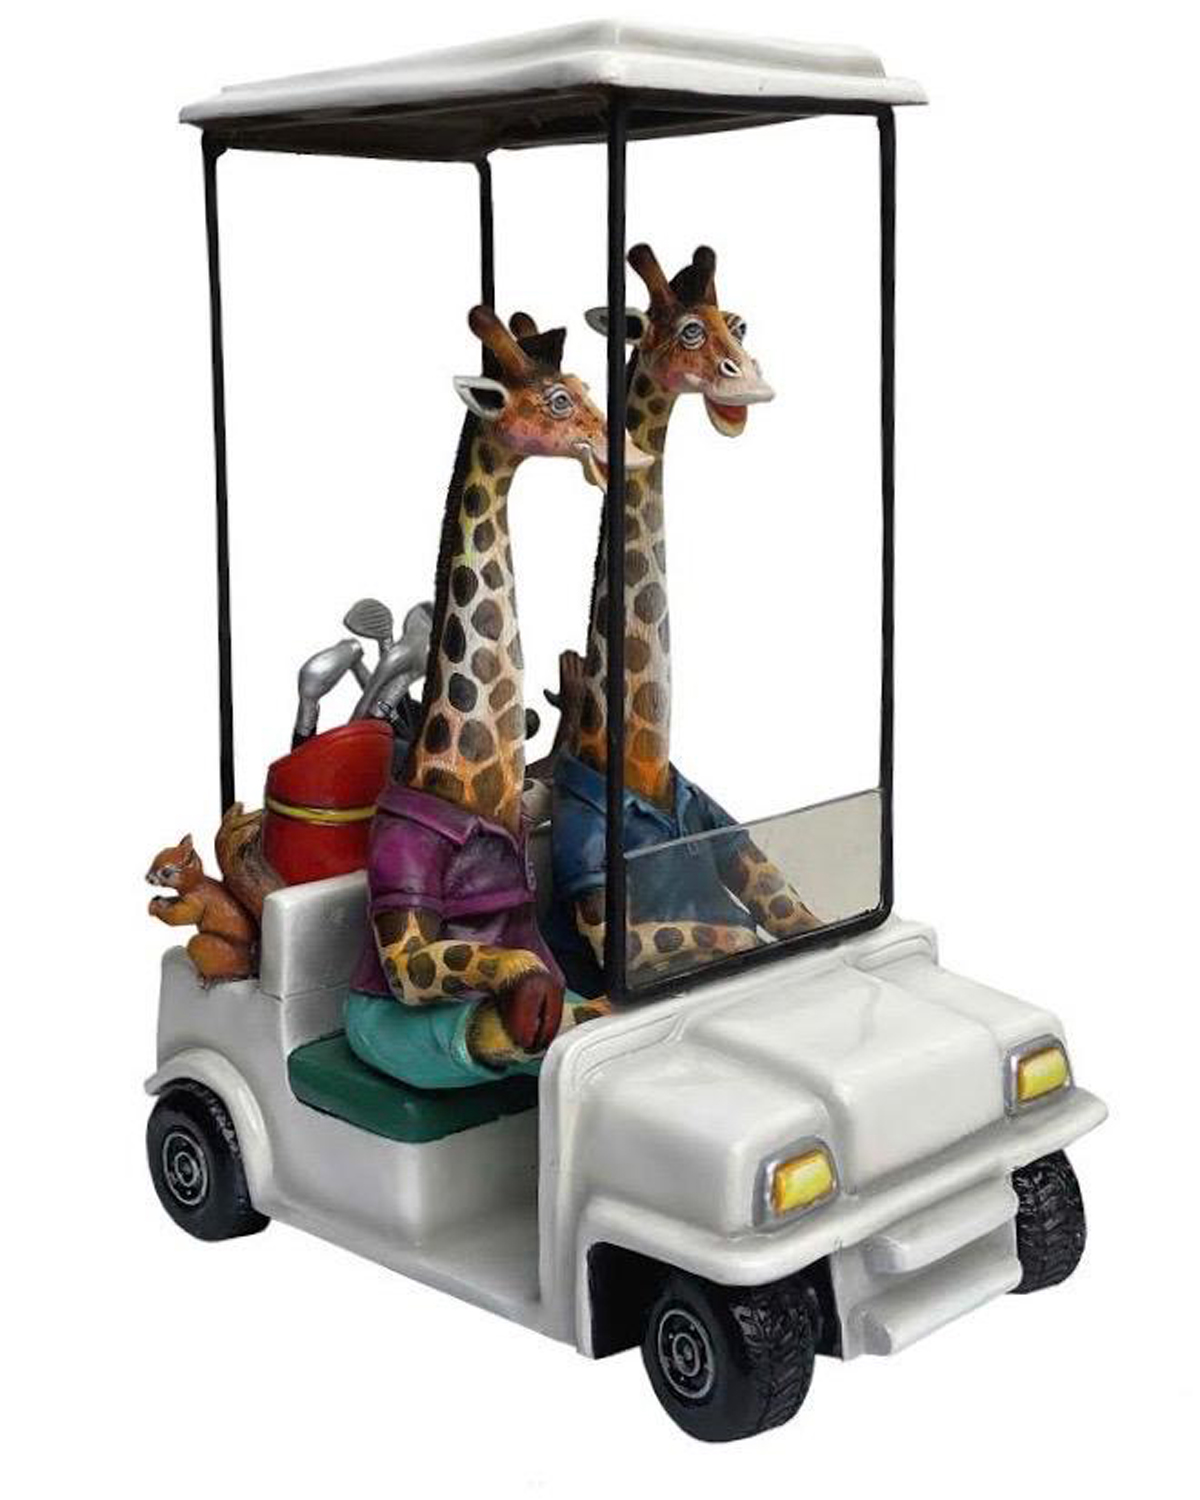 Mixed Media Sculpture of Giraffes in Golf Cart